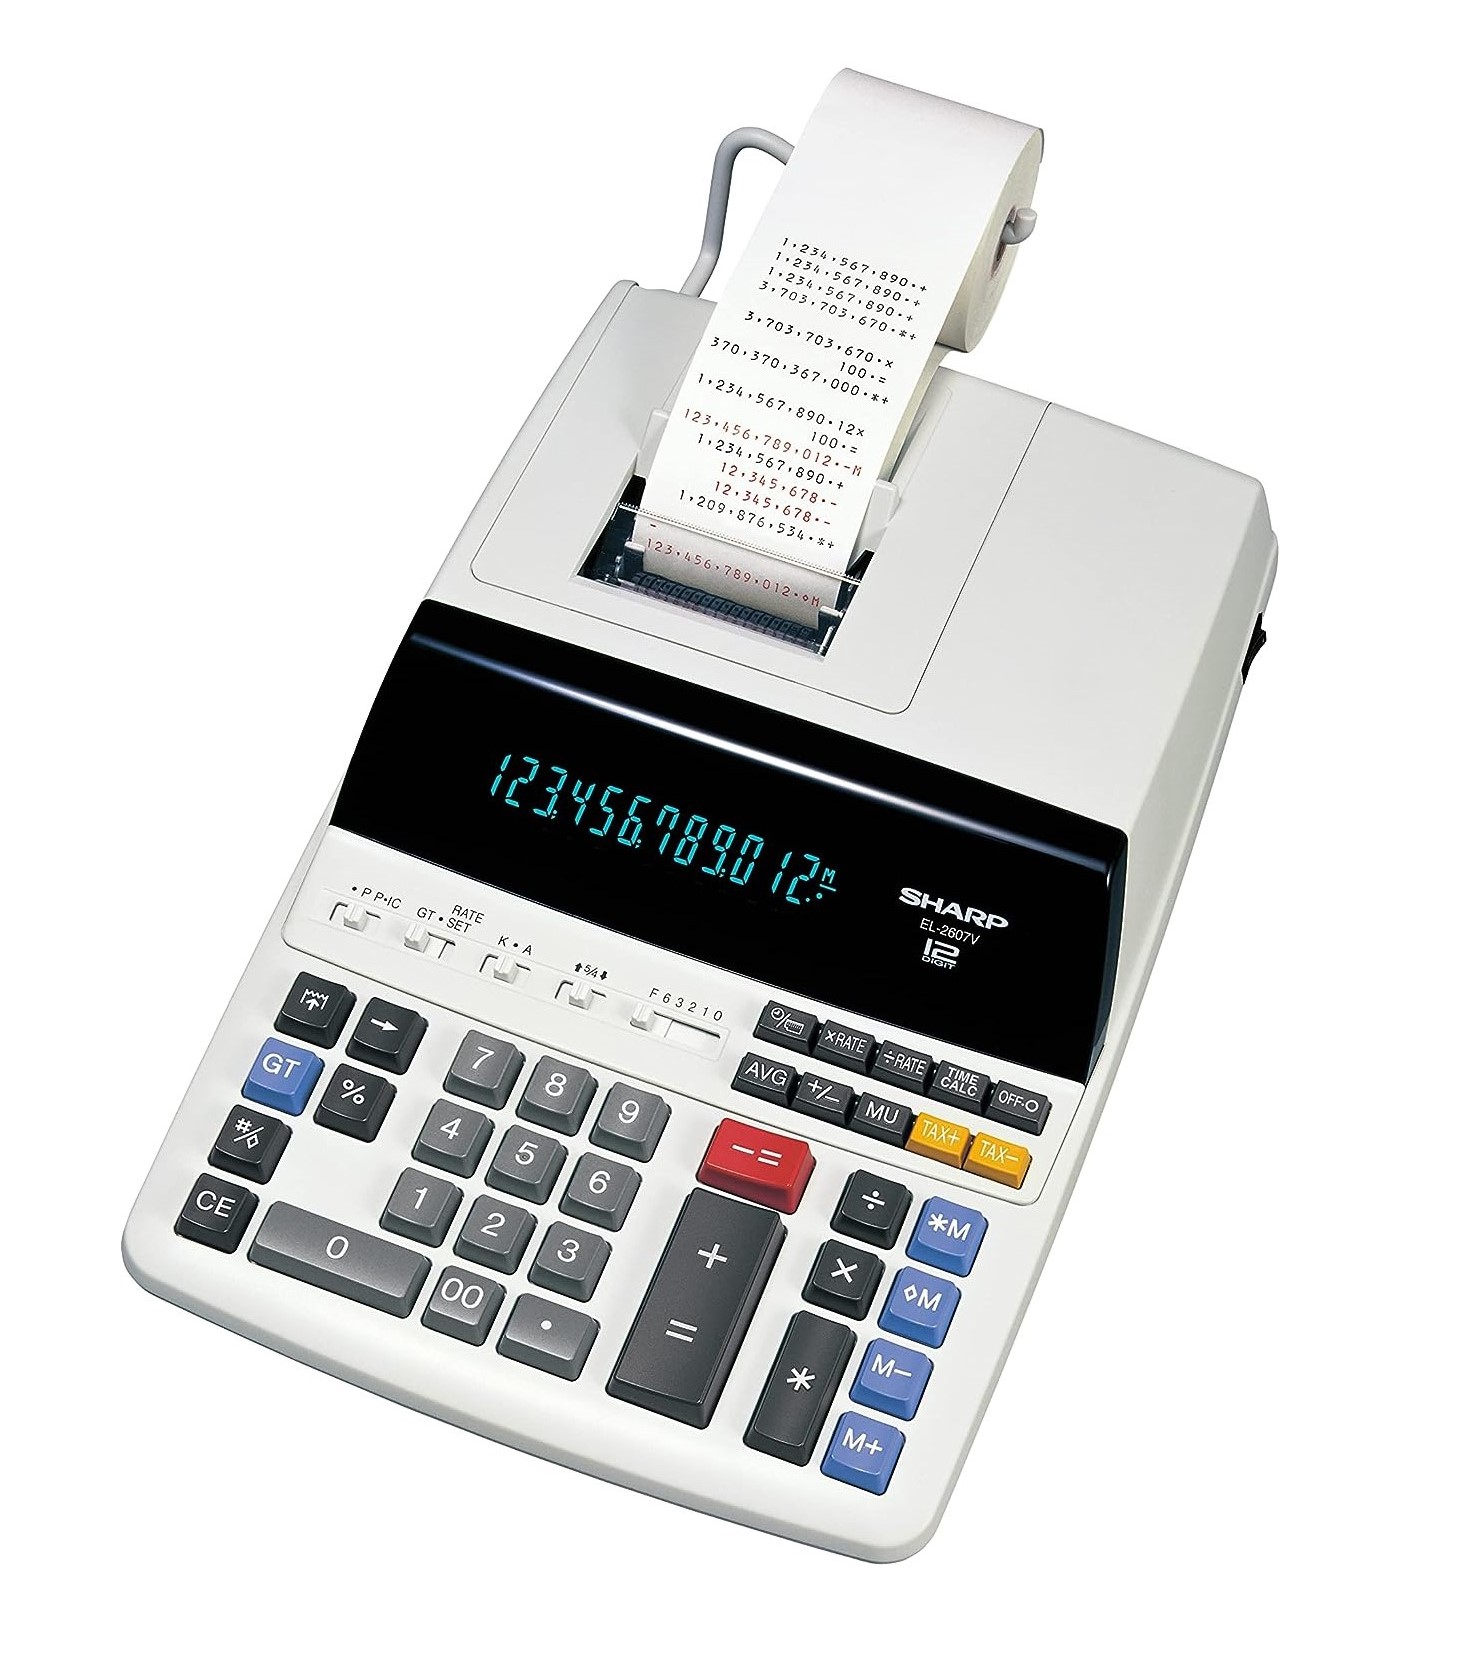 Calcolatrice Sharp da tavolo scrivente 12 cifre - EL-2607V